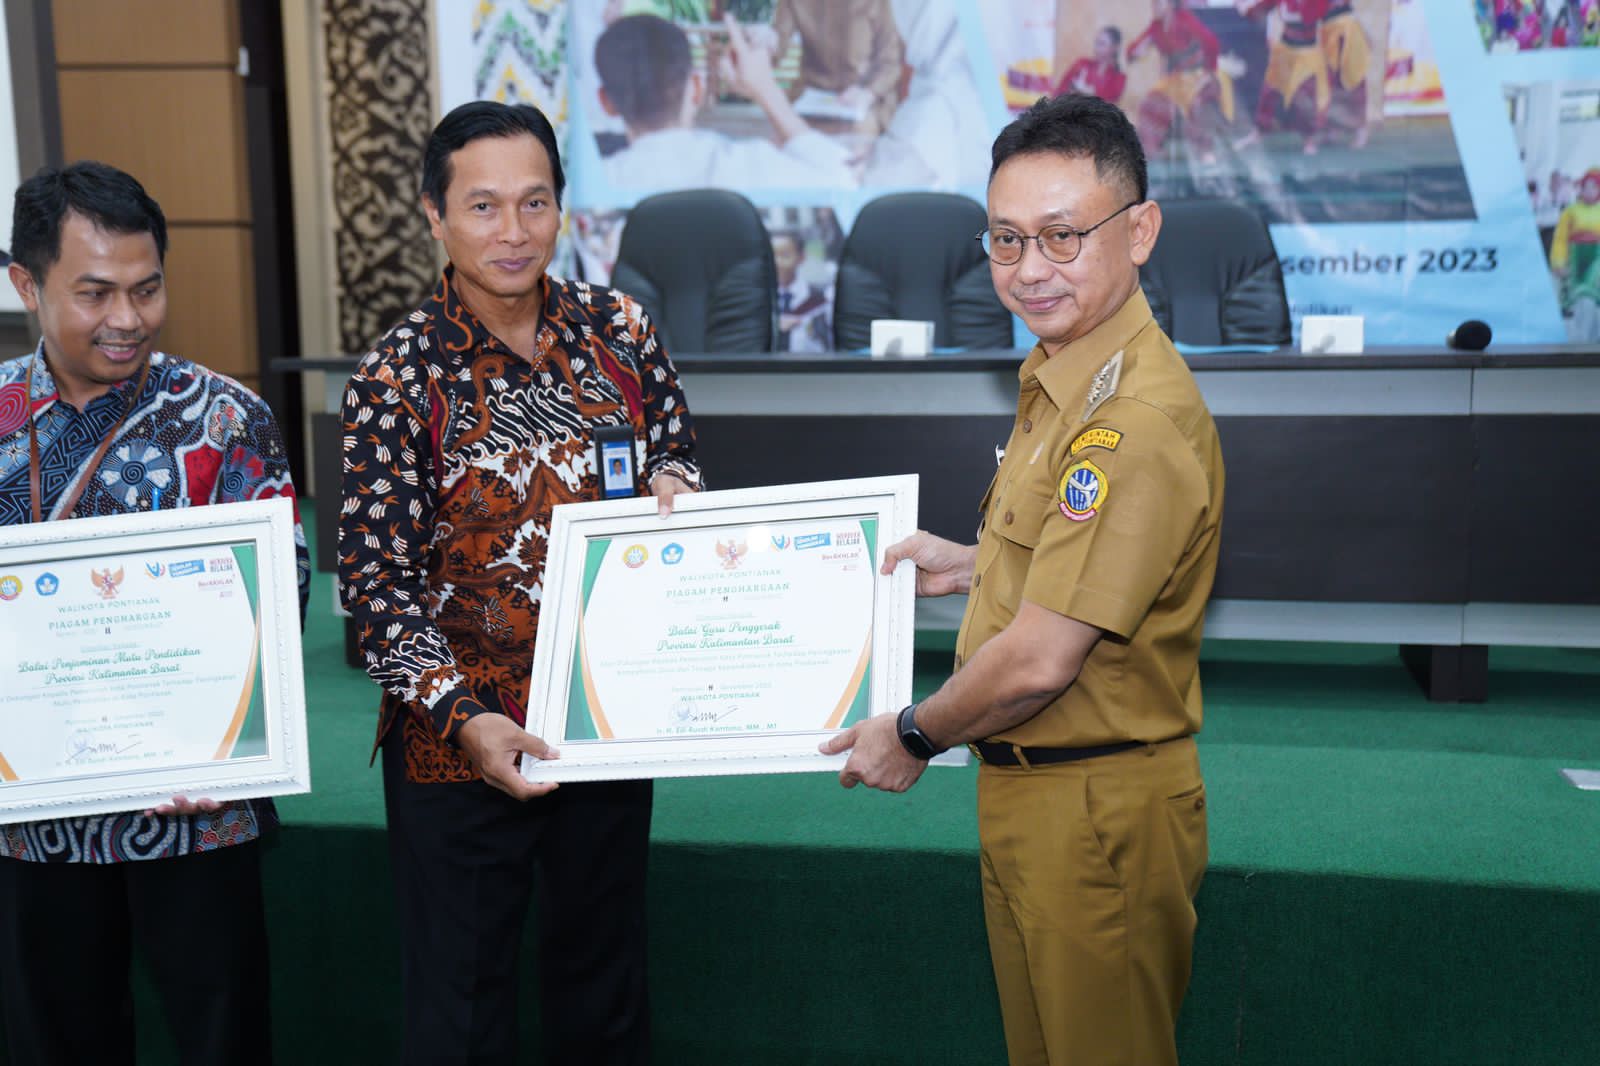 Wali Kota Pontianak, Edi Rusdi Kamtono menyerahkan piagam penghargaan kepada instansi atas dukungannya pada dunia pendidikan dan kebudayaan. (Foto: Kominfo/Prokopim Pontianak)